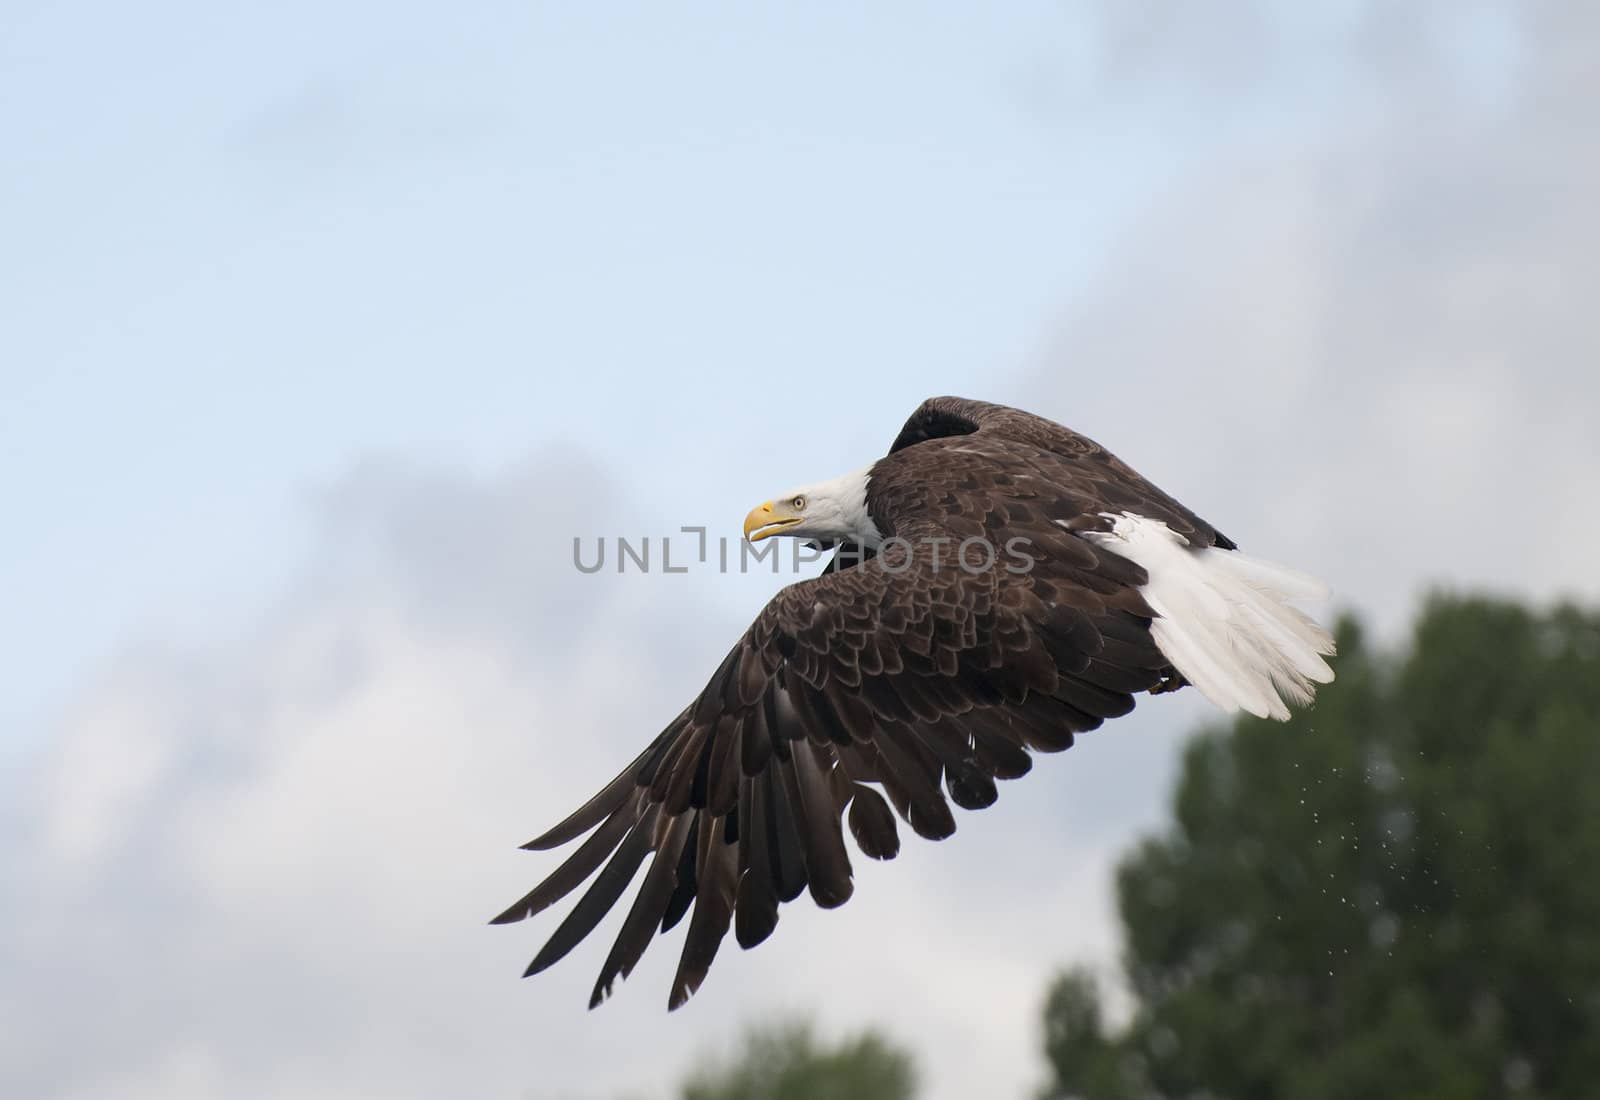 Intense Bald Eagle by Gordo25